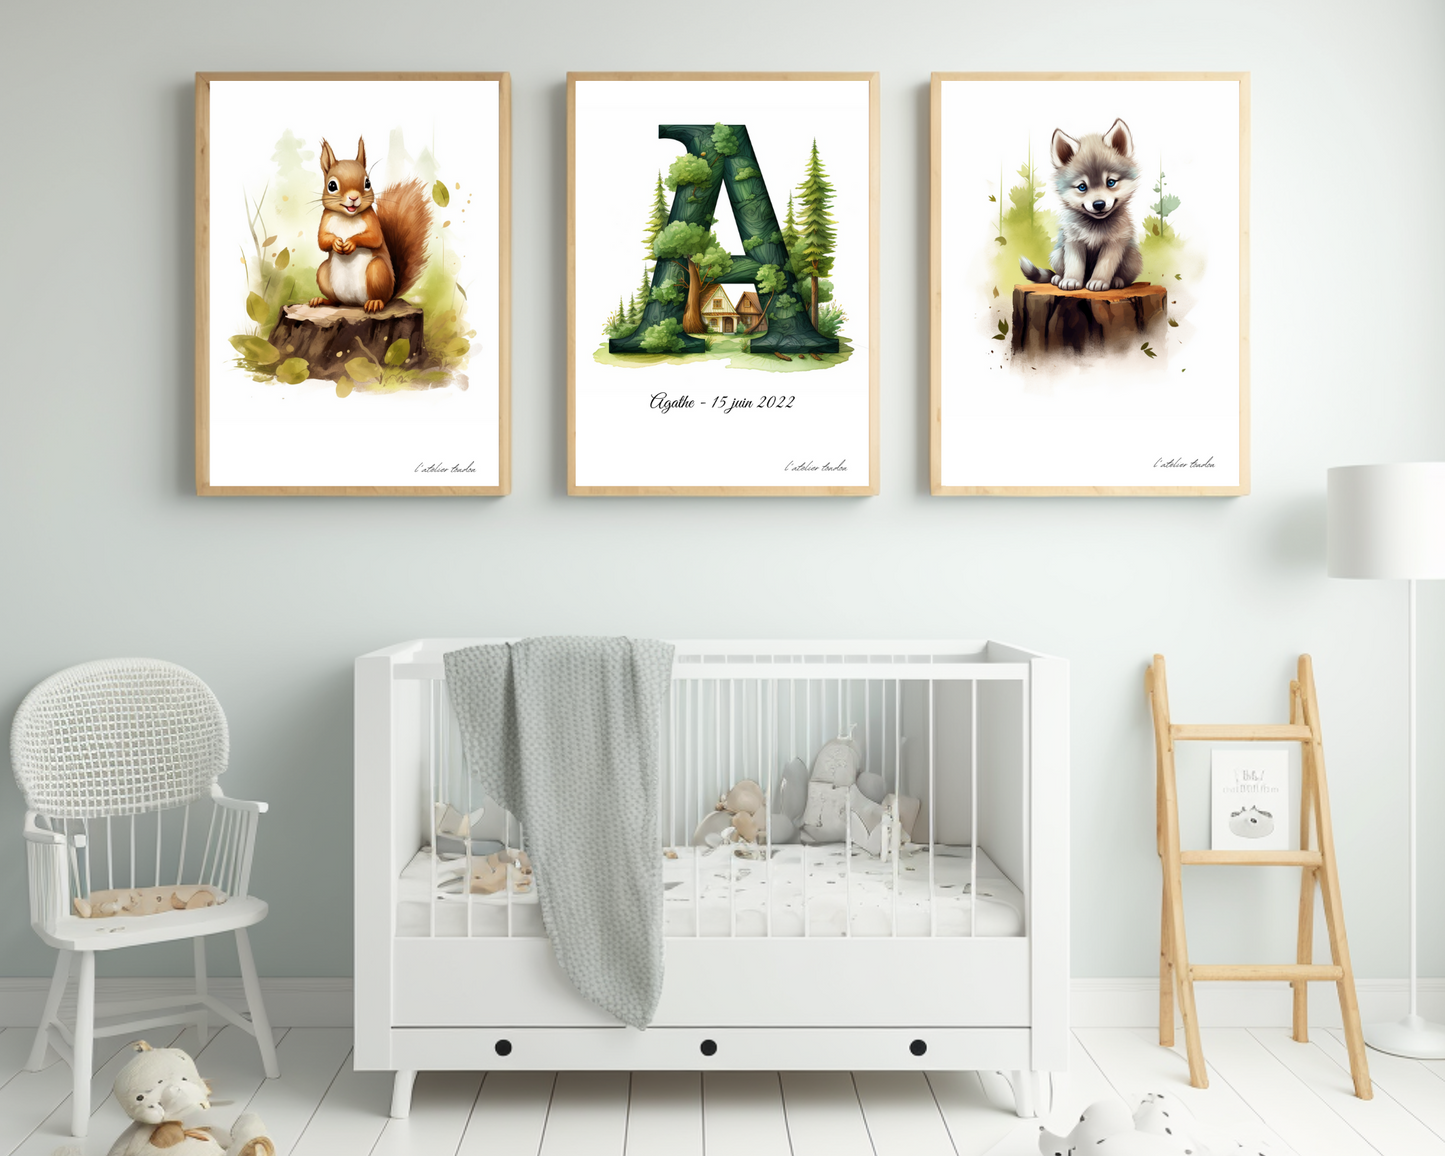 Décoration murale chambre bébé/enfant - Lot 3 illustrations - Thème animaux de la forêt - 2 animaux